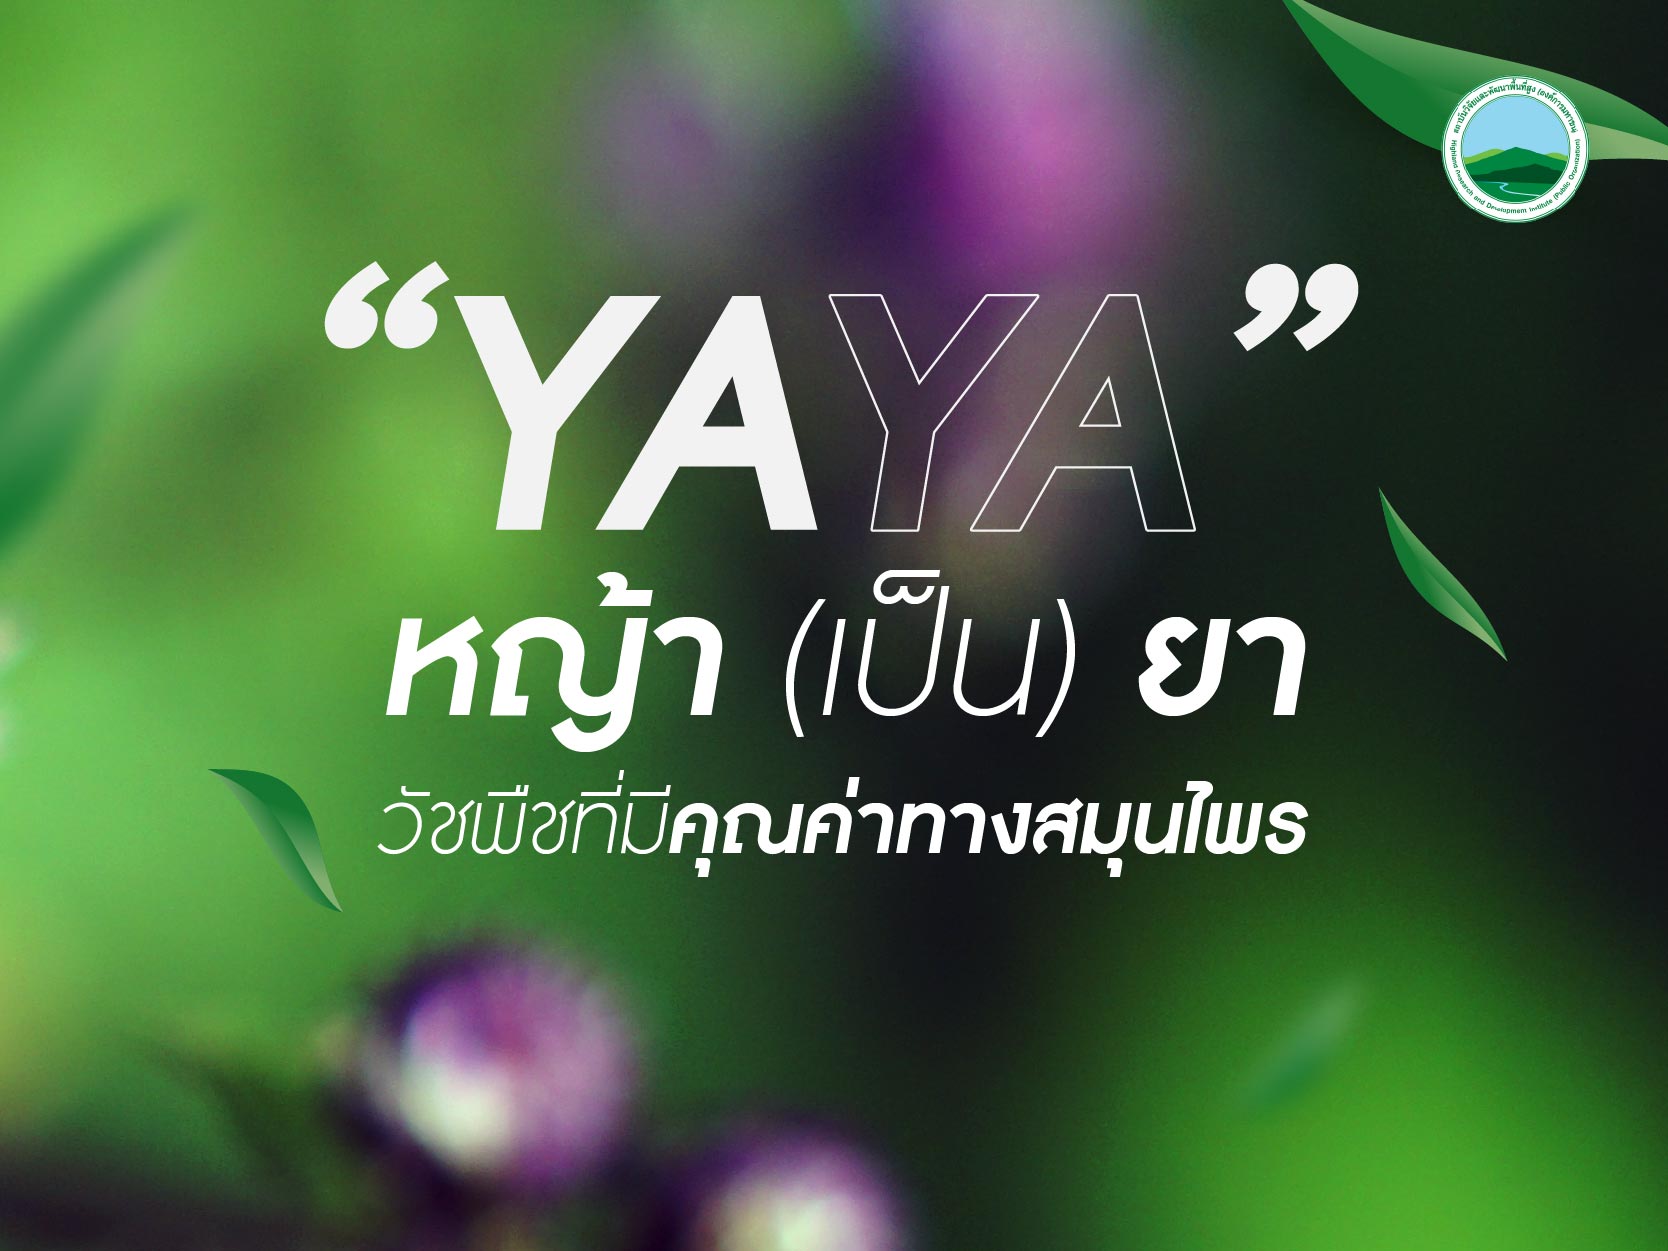 “YAYA” หญ้า (เป็น) ยา วัชพืชที่มีคุณค่าทางสมุนไพร